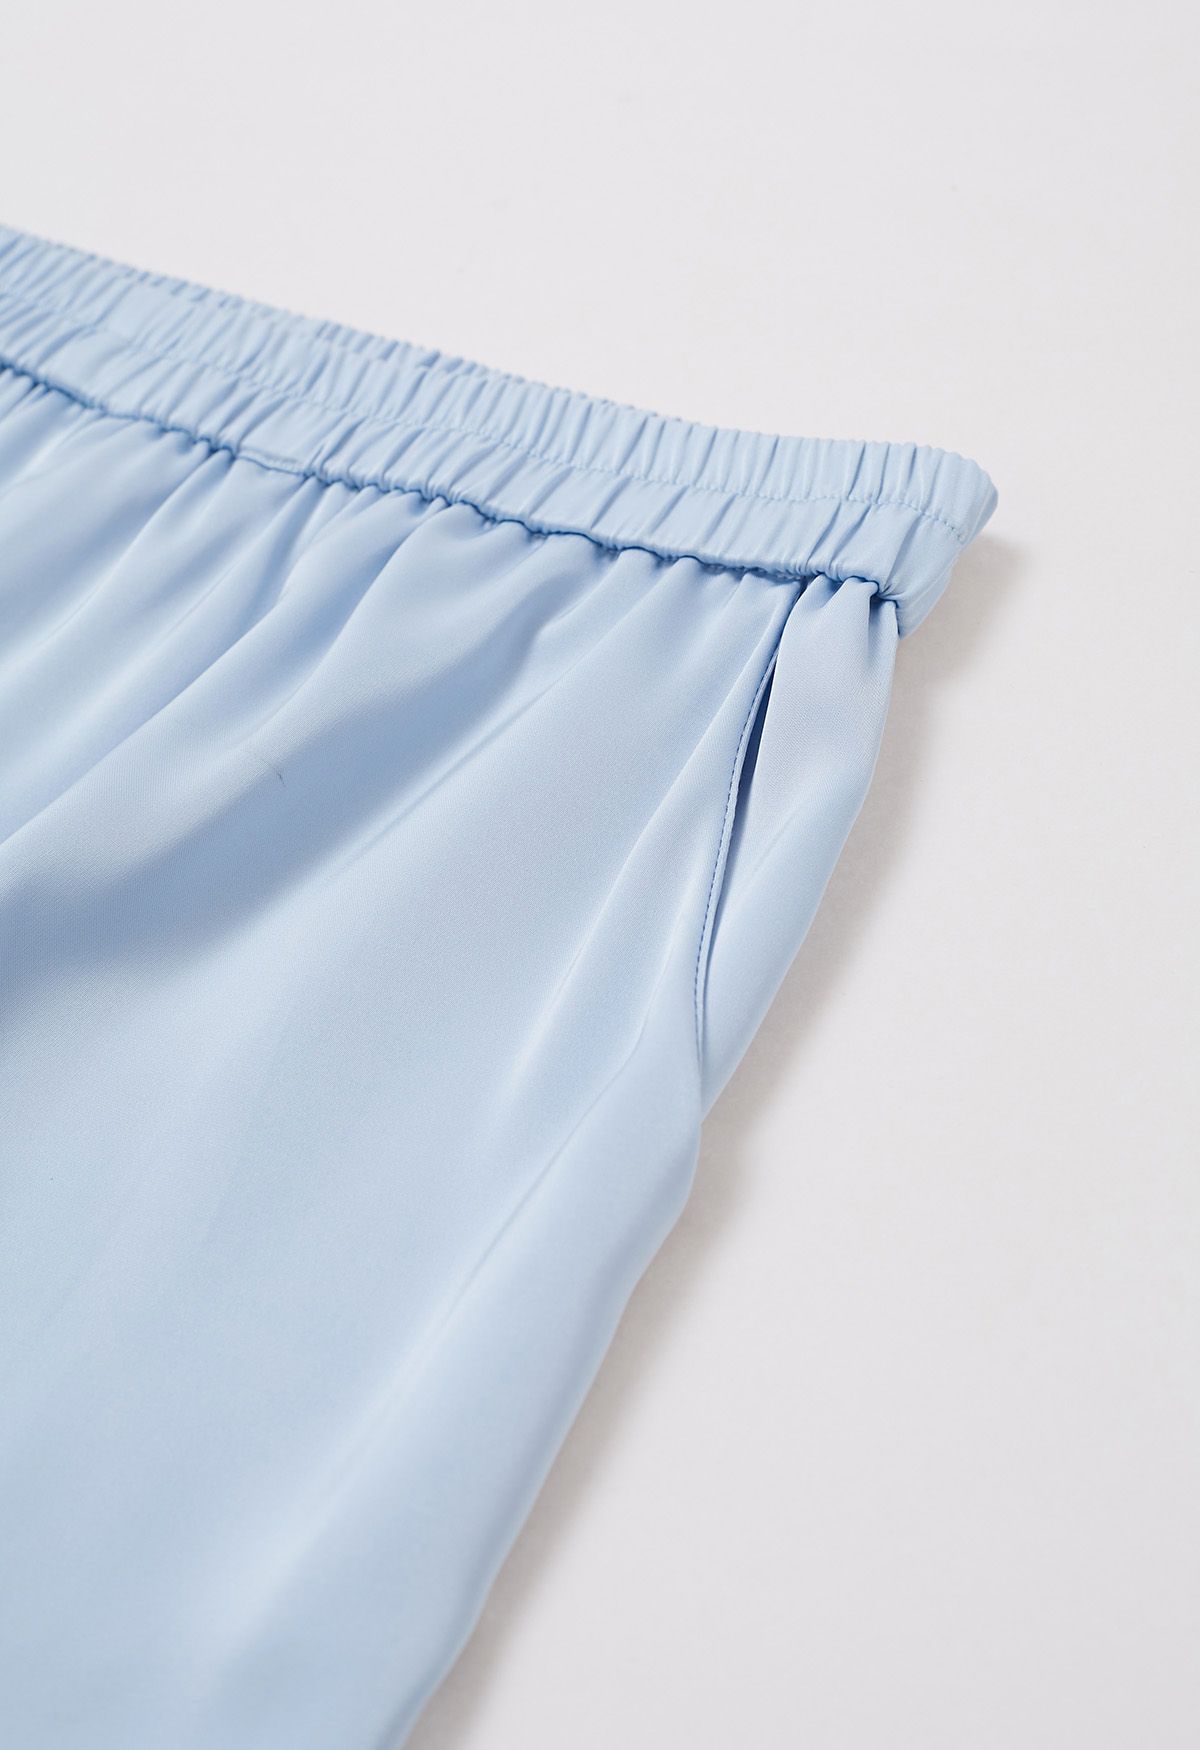 Pantalones sin cordones con acabado satinado en azul